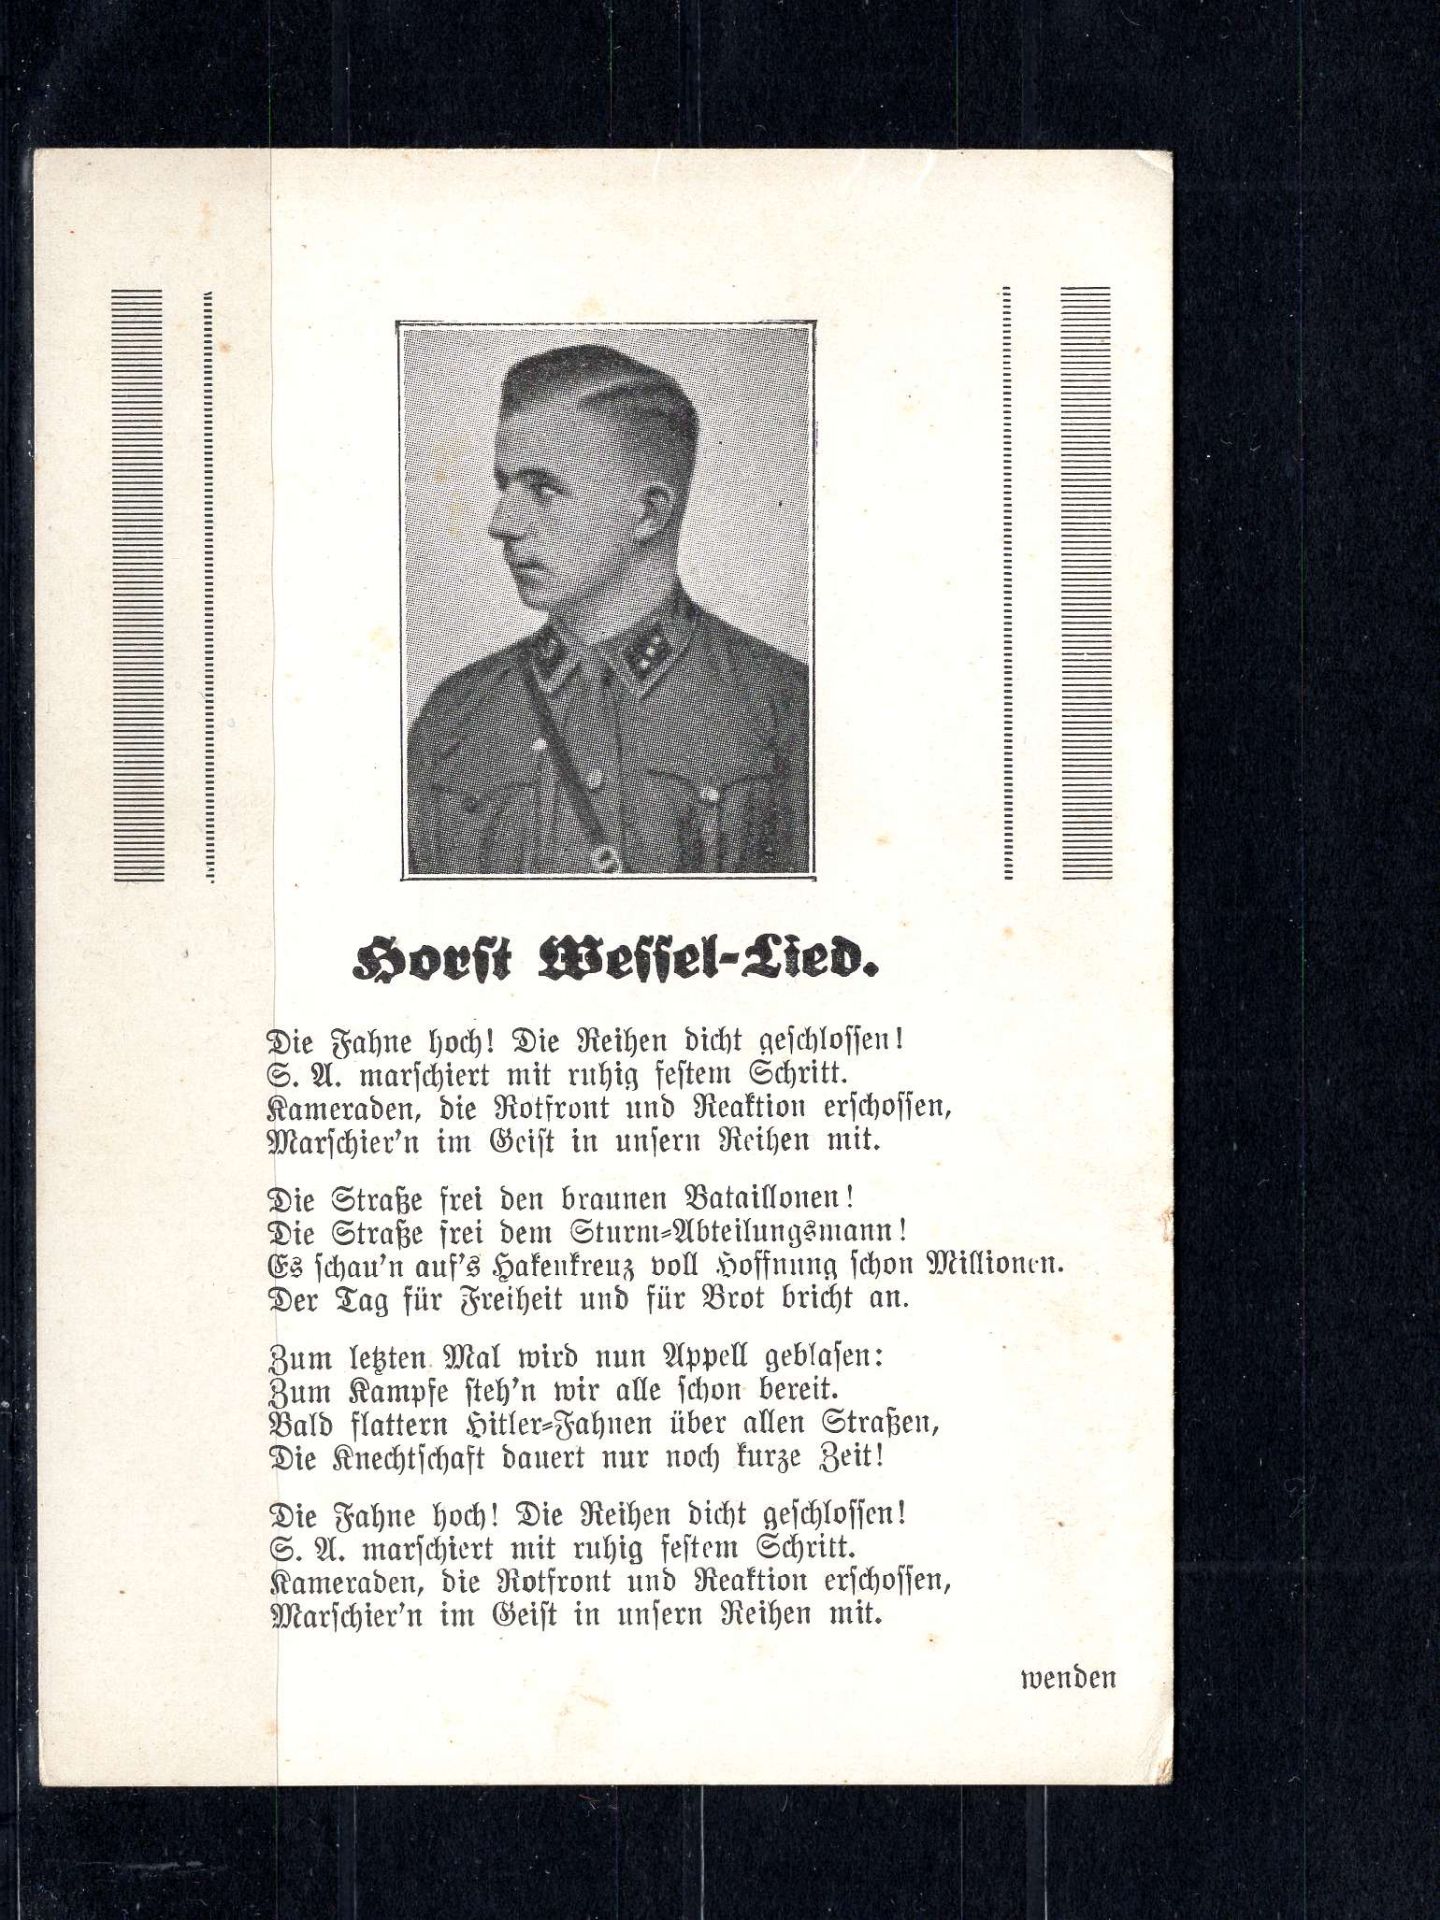 Drittes Reich, ungebrauchte Original - Karte mit Horst Wessel - Lied. Gute Erhaltung.